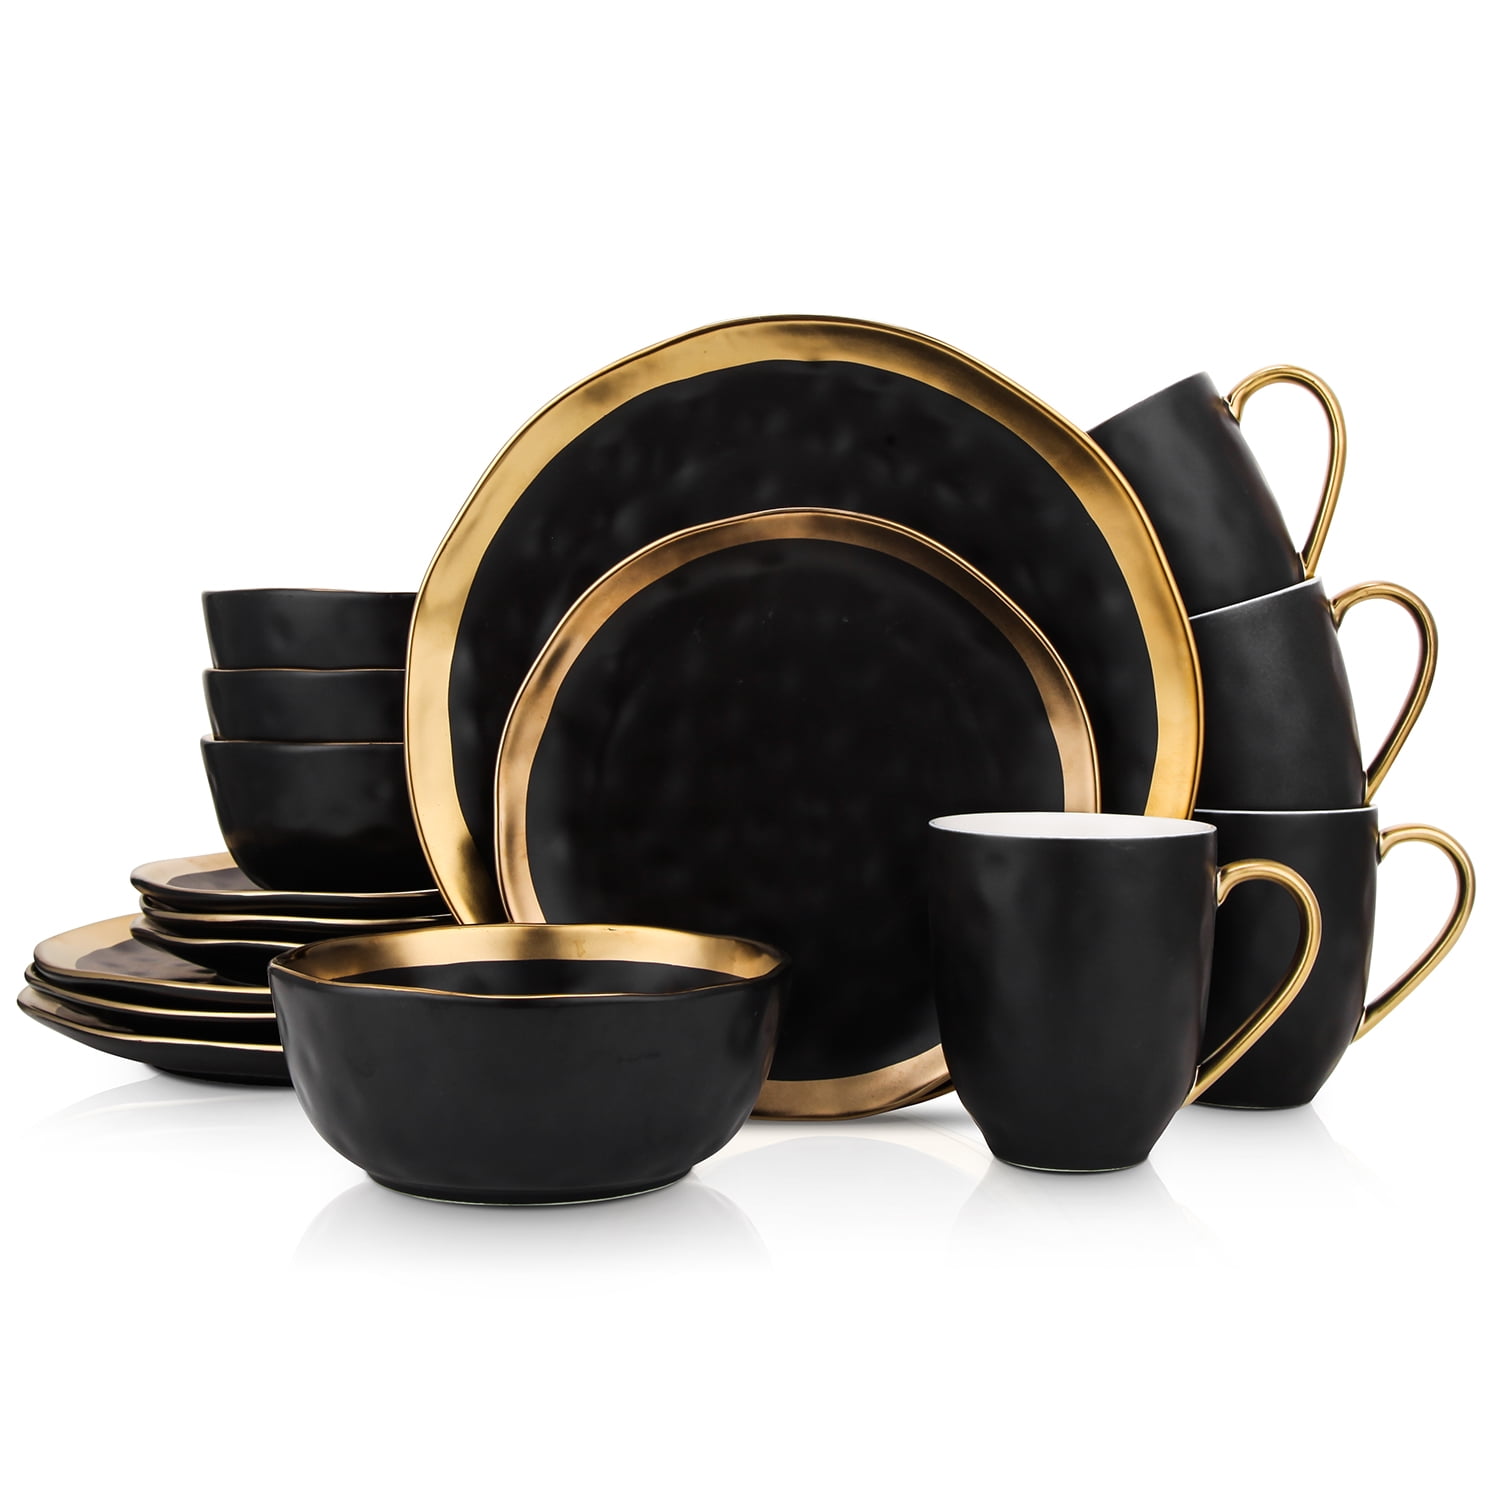 16PC Dinner Set Bowl Plate Mug Soup Side Porcelain Cup Gift Kitchen Service New Black Patterns 